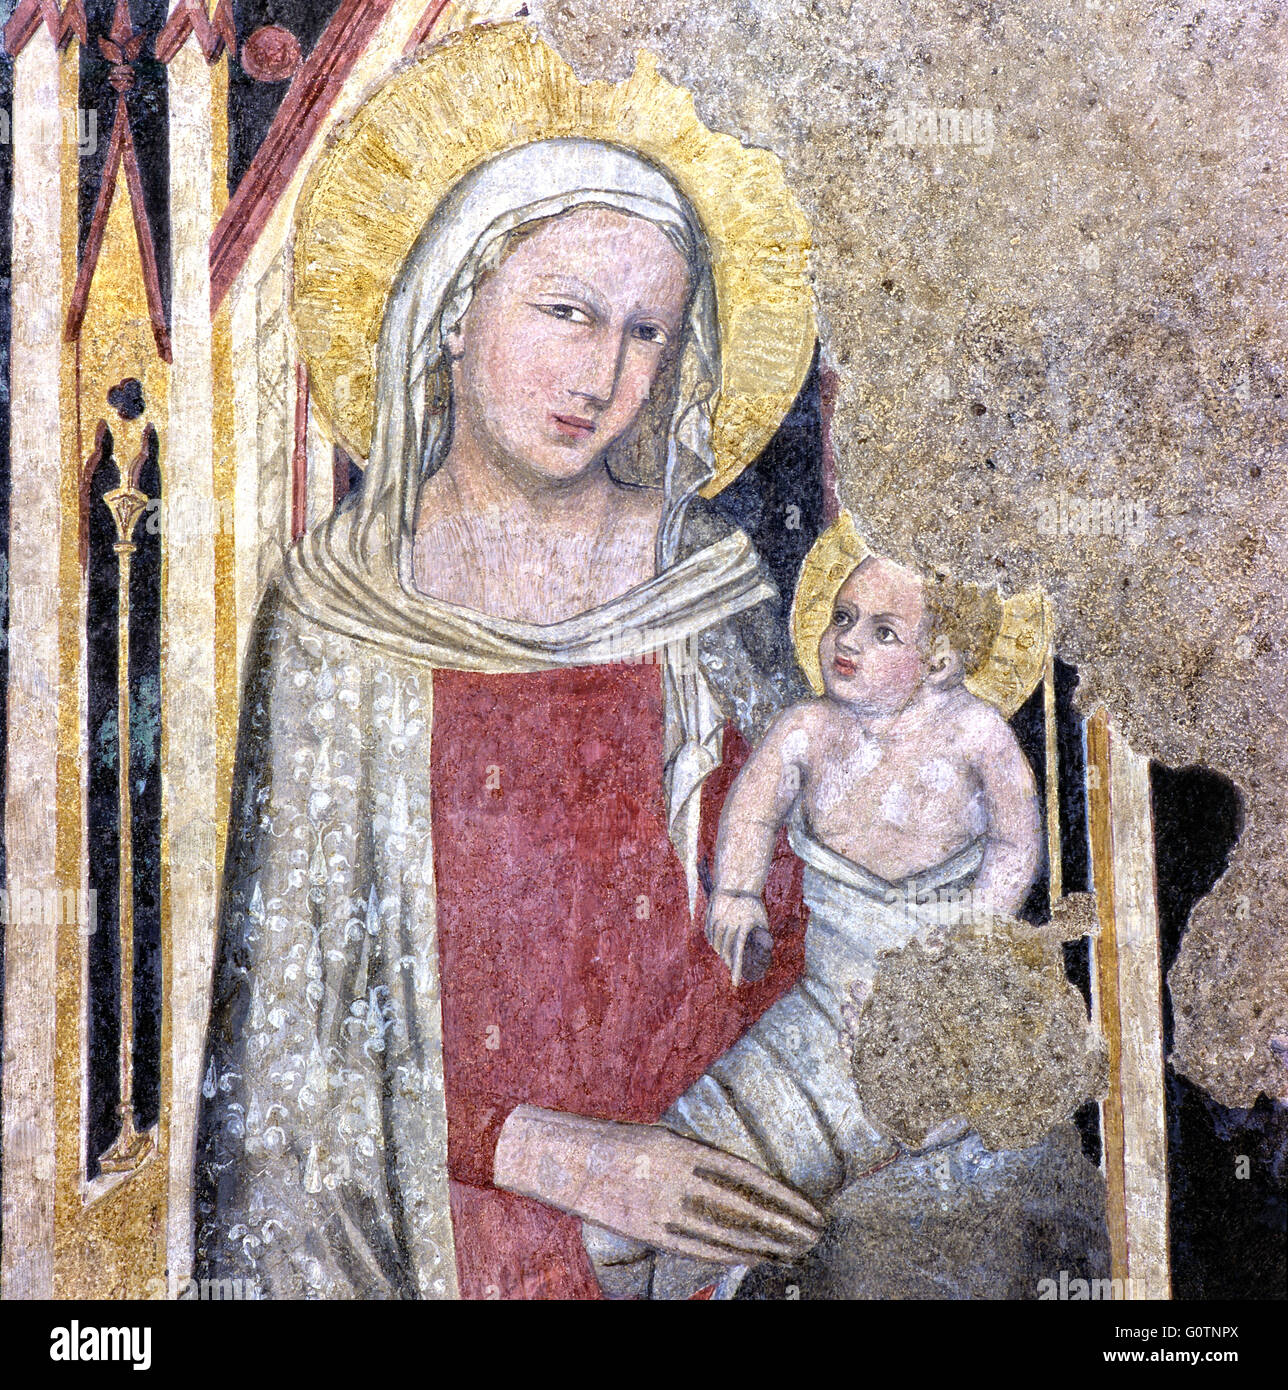 Italien Abruzzen Sulmona Kathedrale von St. Panfilo - Krypta-Fresko der Madonna inthronisiert zwischen St. Michael und Johannes dem Täufer Jahrhundert XIV Stockfoto